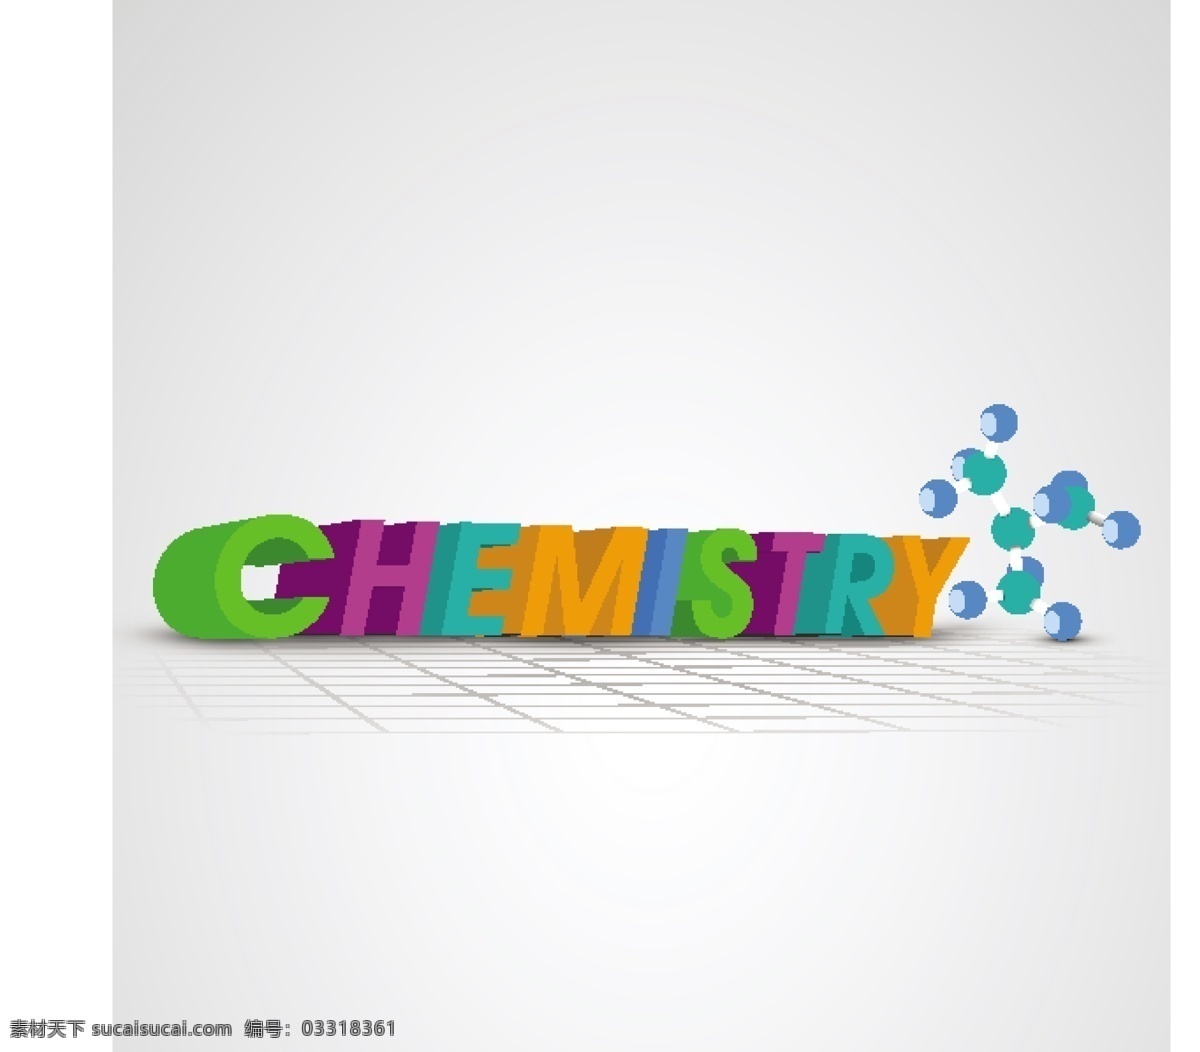 化学科技图标 原子 化学 科学概念 科学图标 科技图标 办公学习 生活百科 矢量素材 白色